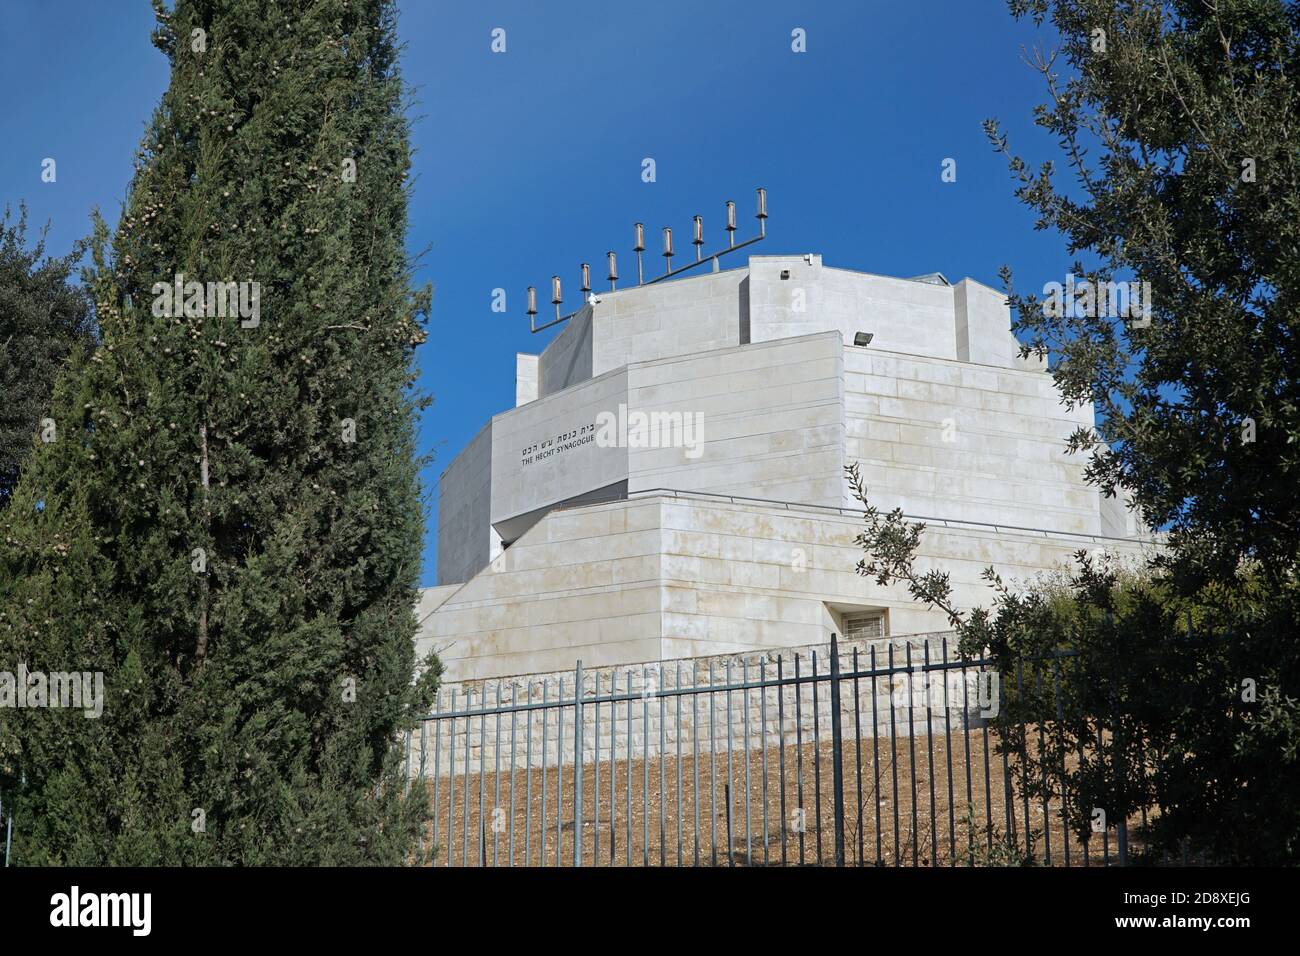 Gerusalemme, Israele - 16 gennaio 2017: La moderna sinagoga situata nel campus del Monte Scopus dell'Università Ebraica. Foto Stock